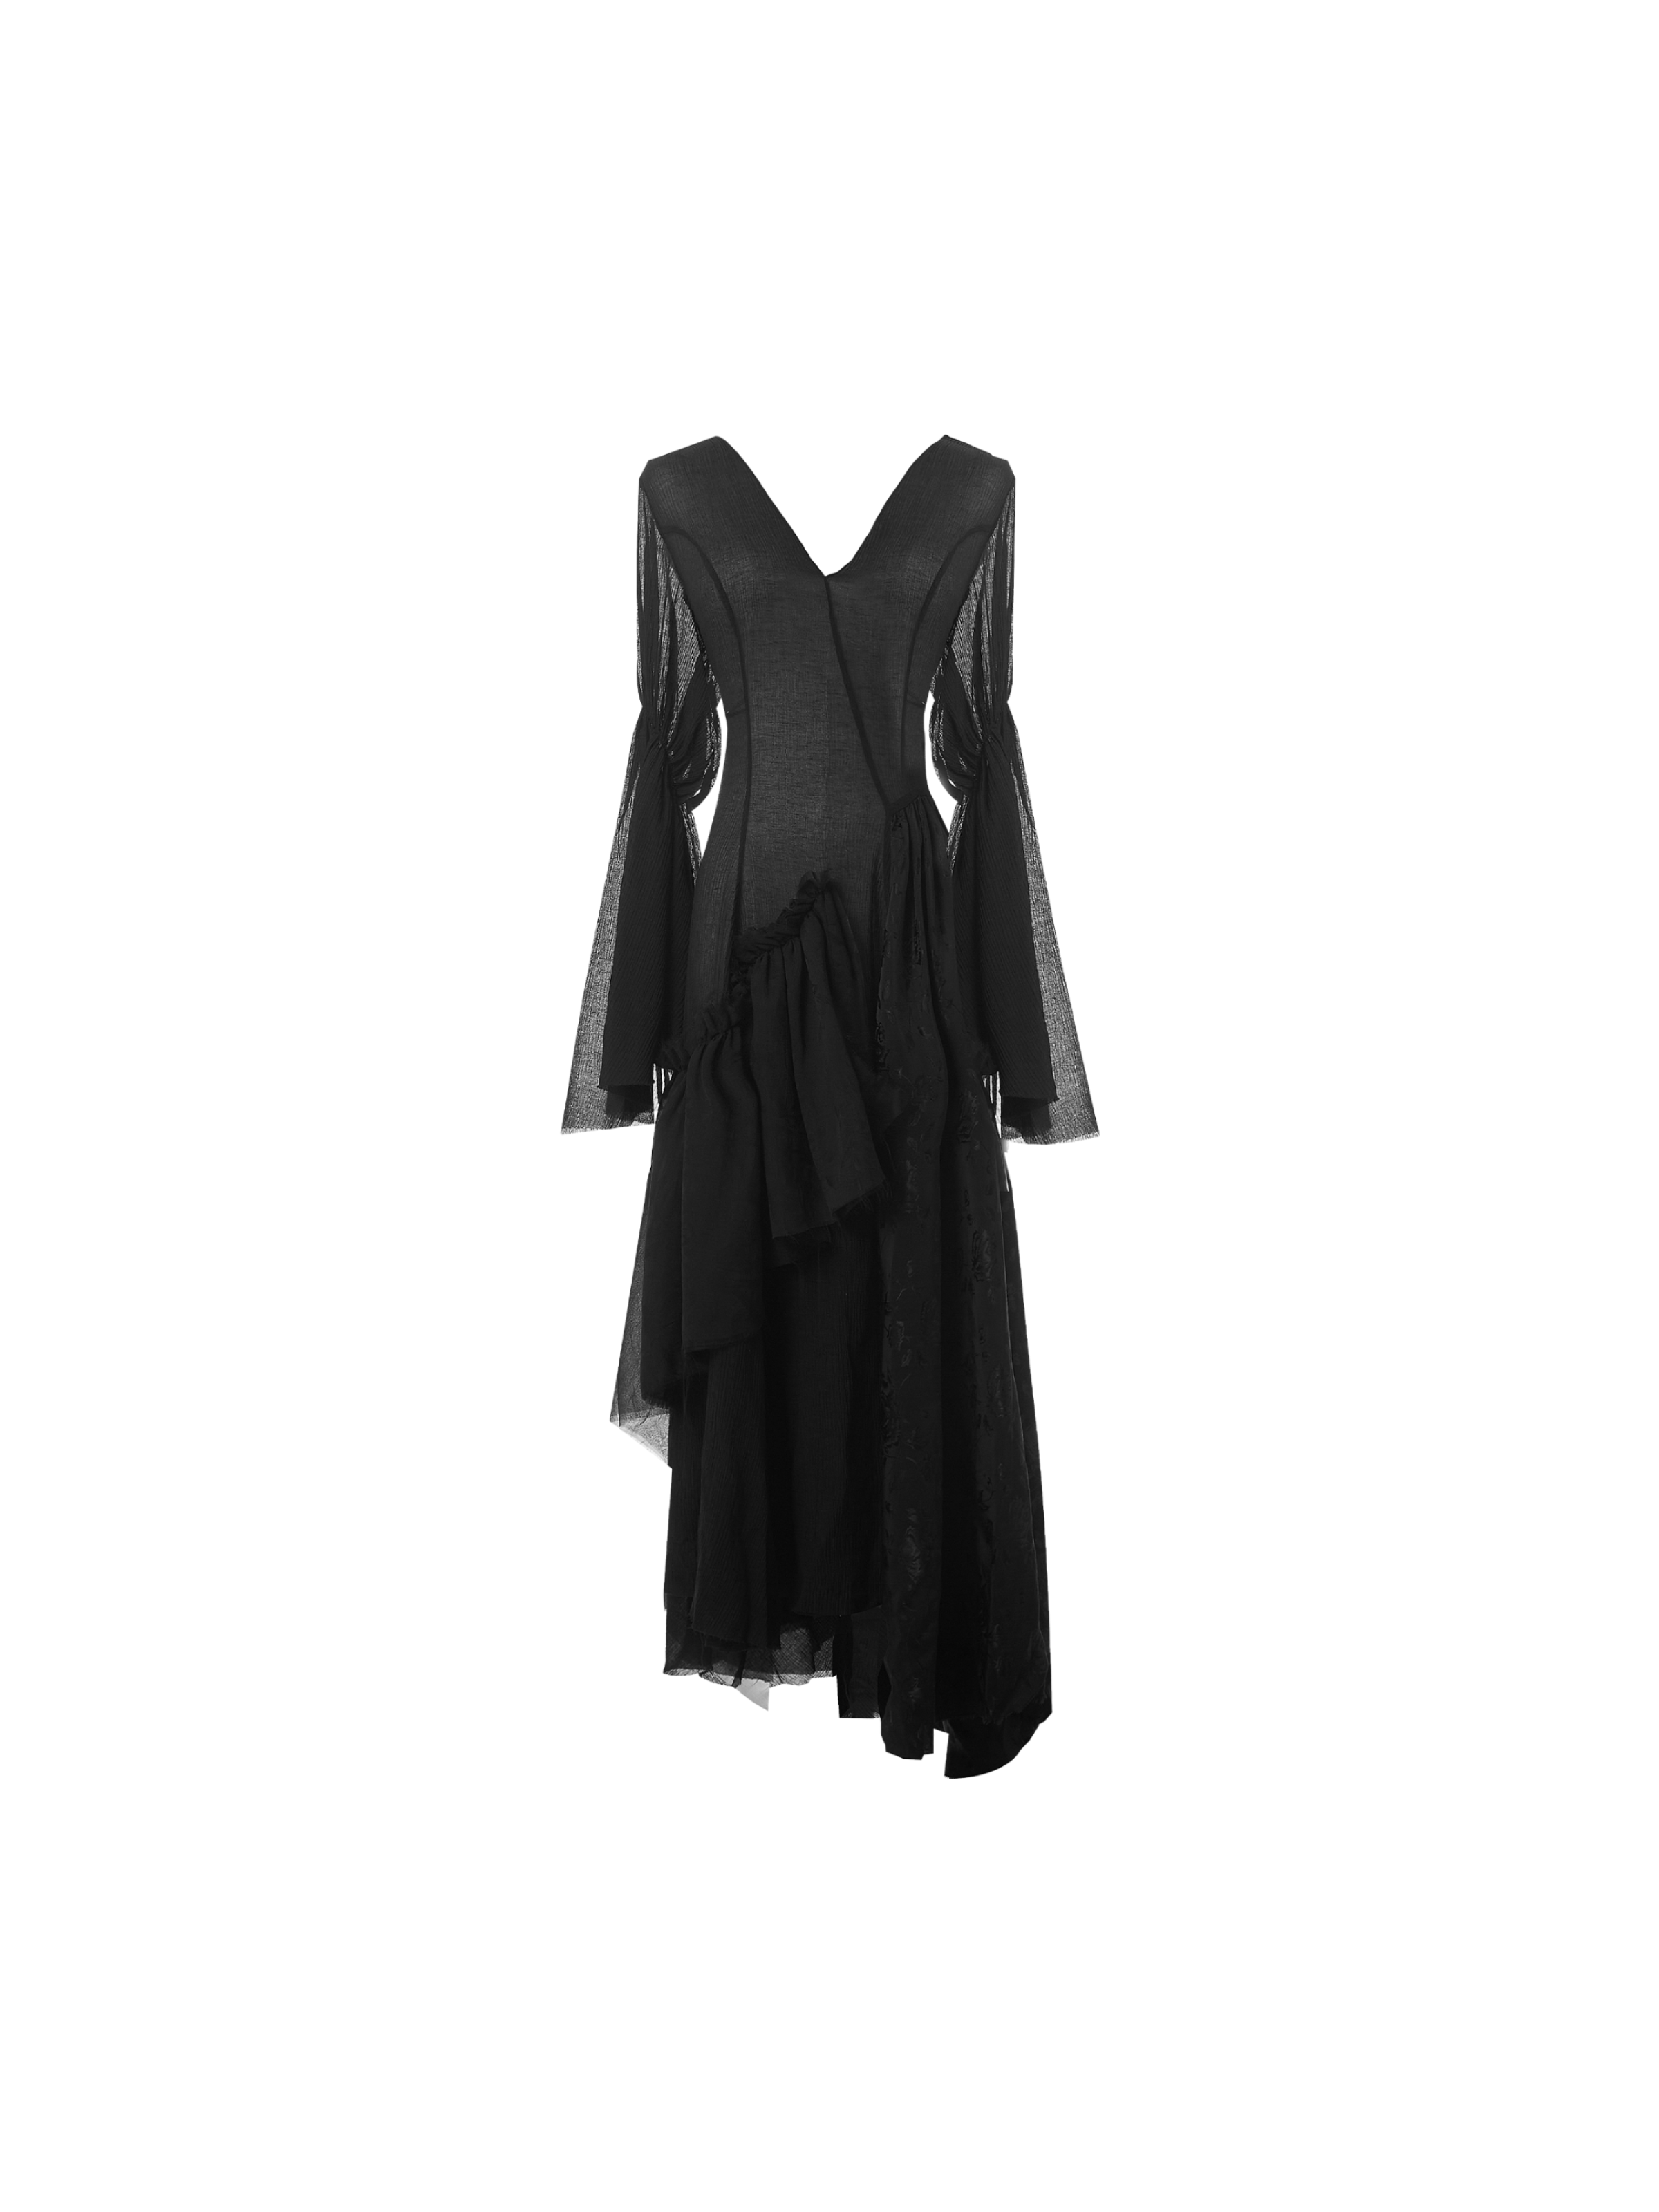 블랙 브이넥 드레스